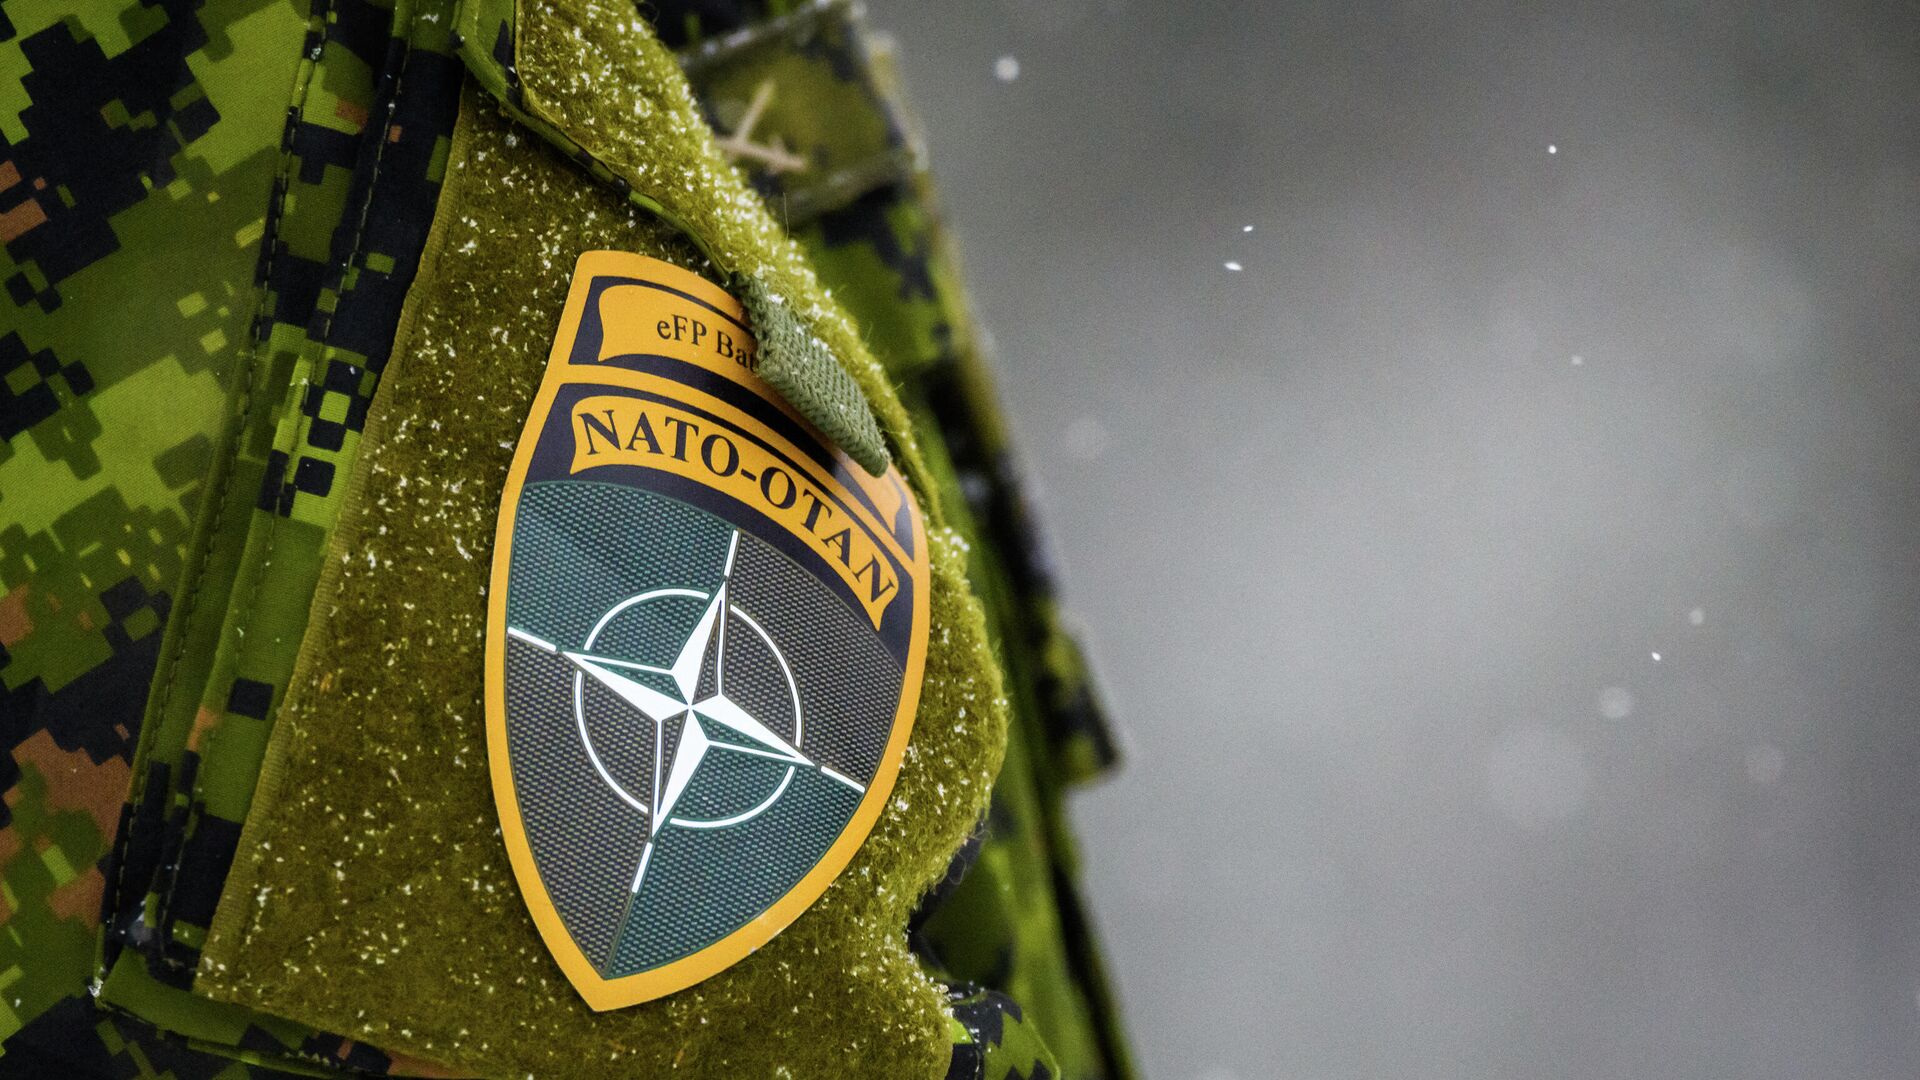 Логотип НАТО на униформе во время ежегодных военных учений НАТО Зимний щит 2021 в Адажи, Латвия. 29 ноября 2021 года - РИА Новости, 1920, 24.01.2022